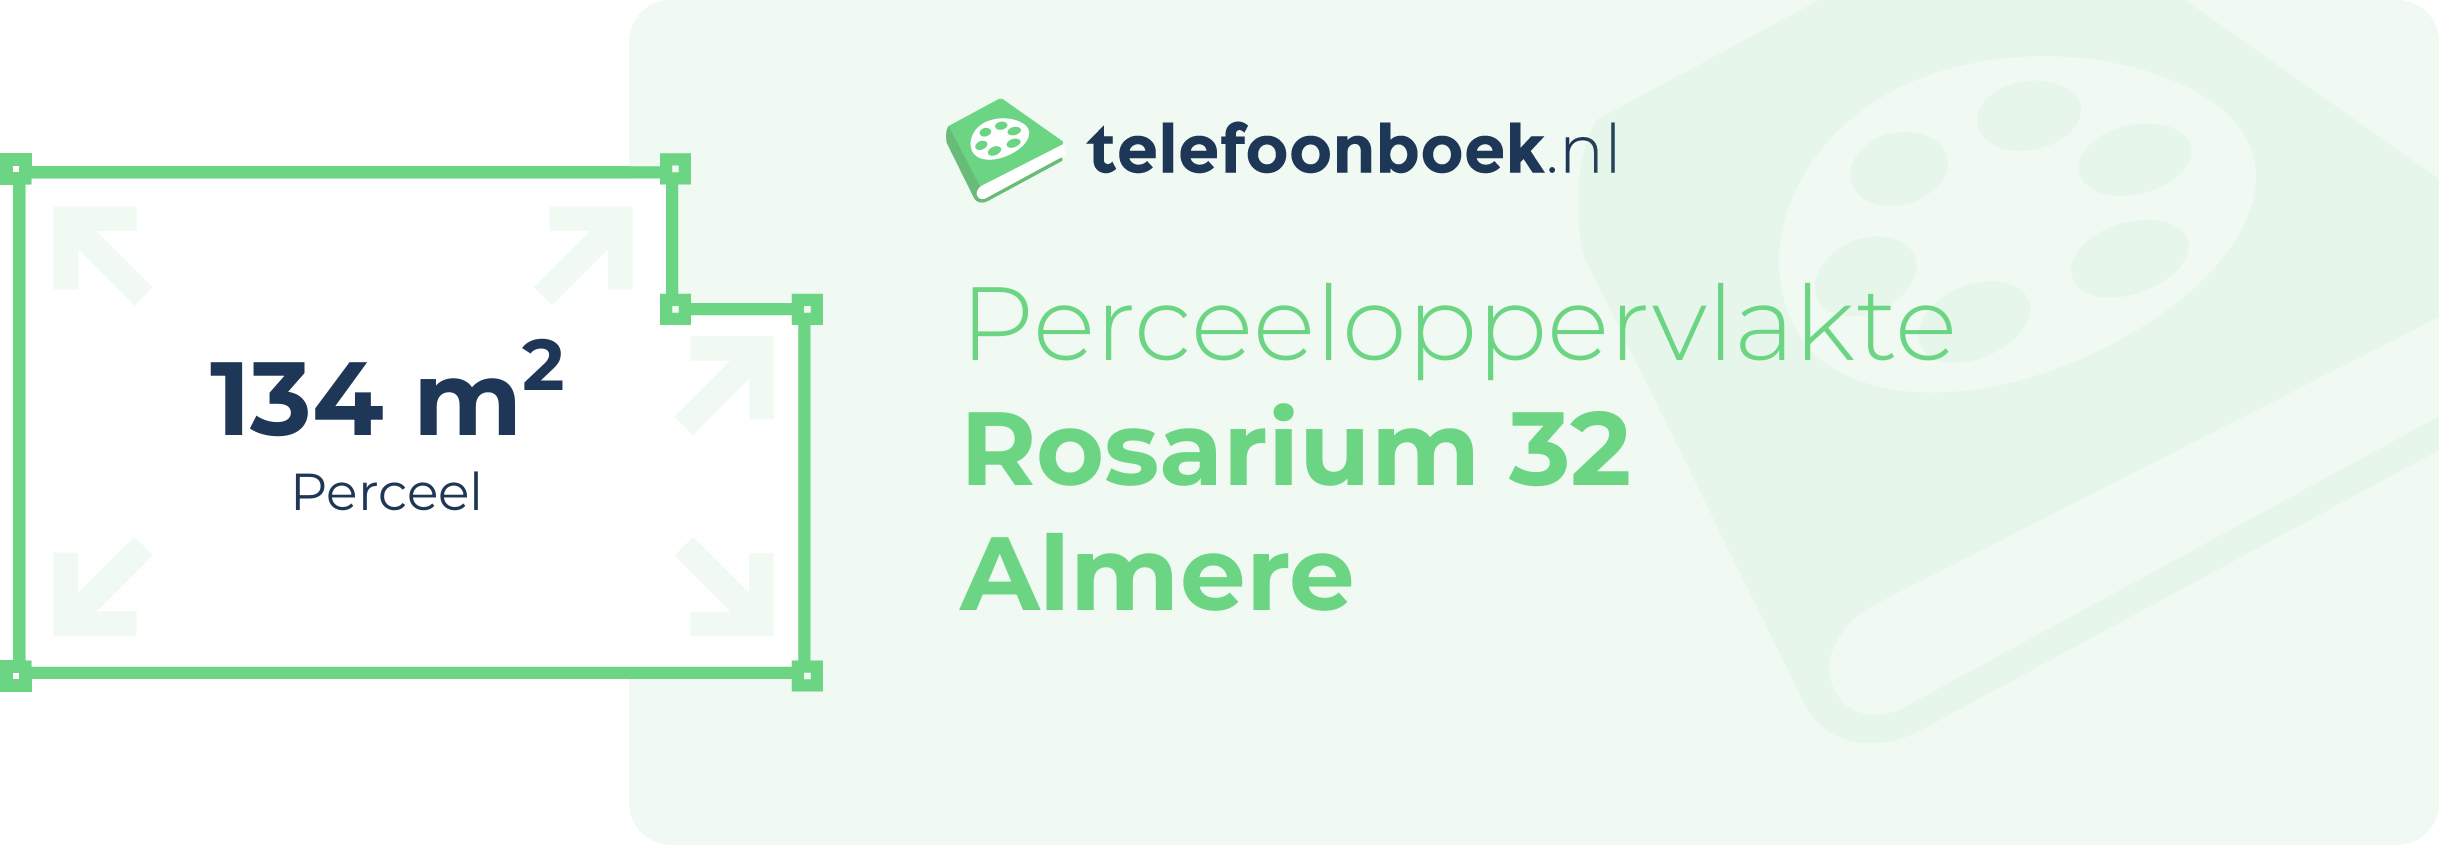 Perceeloppervlakte Rosarium 32 Almere